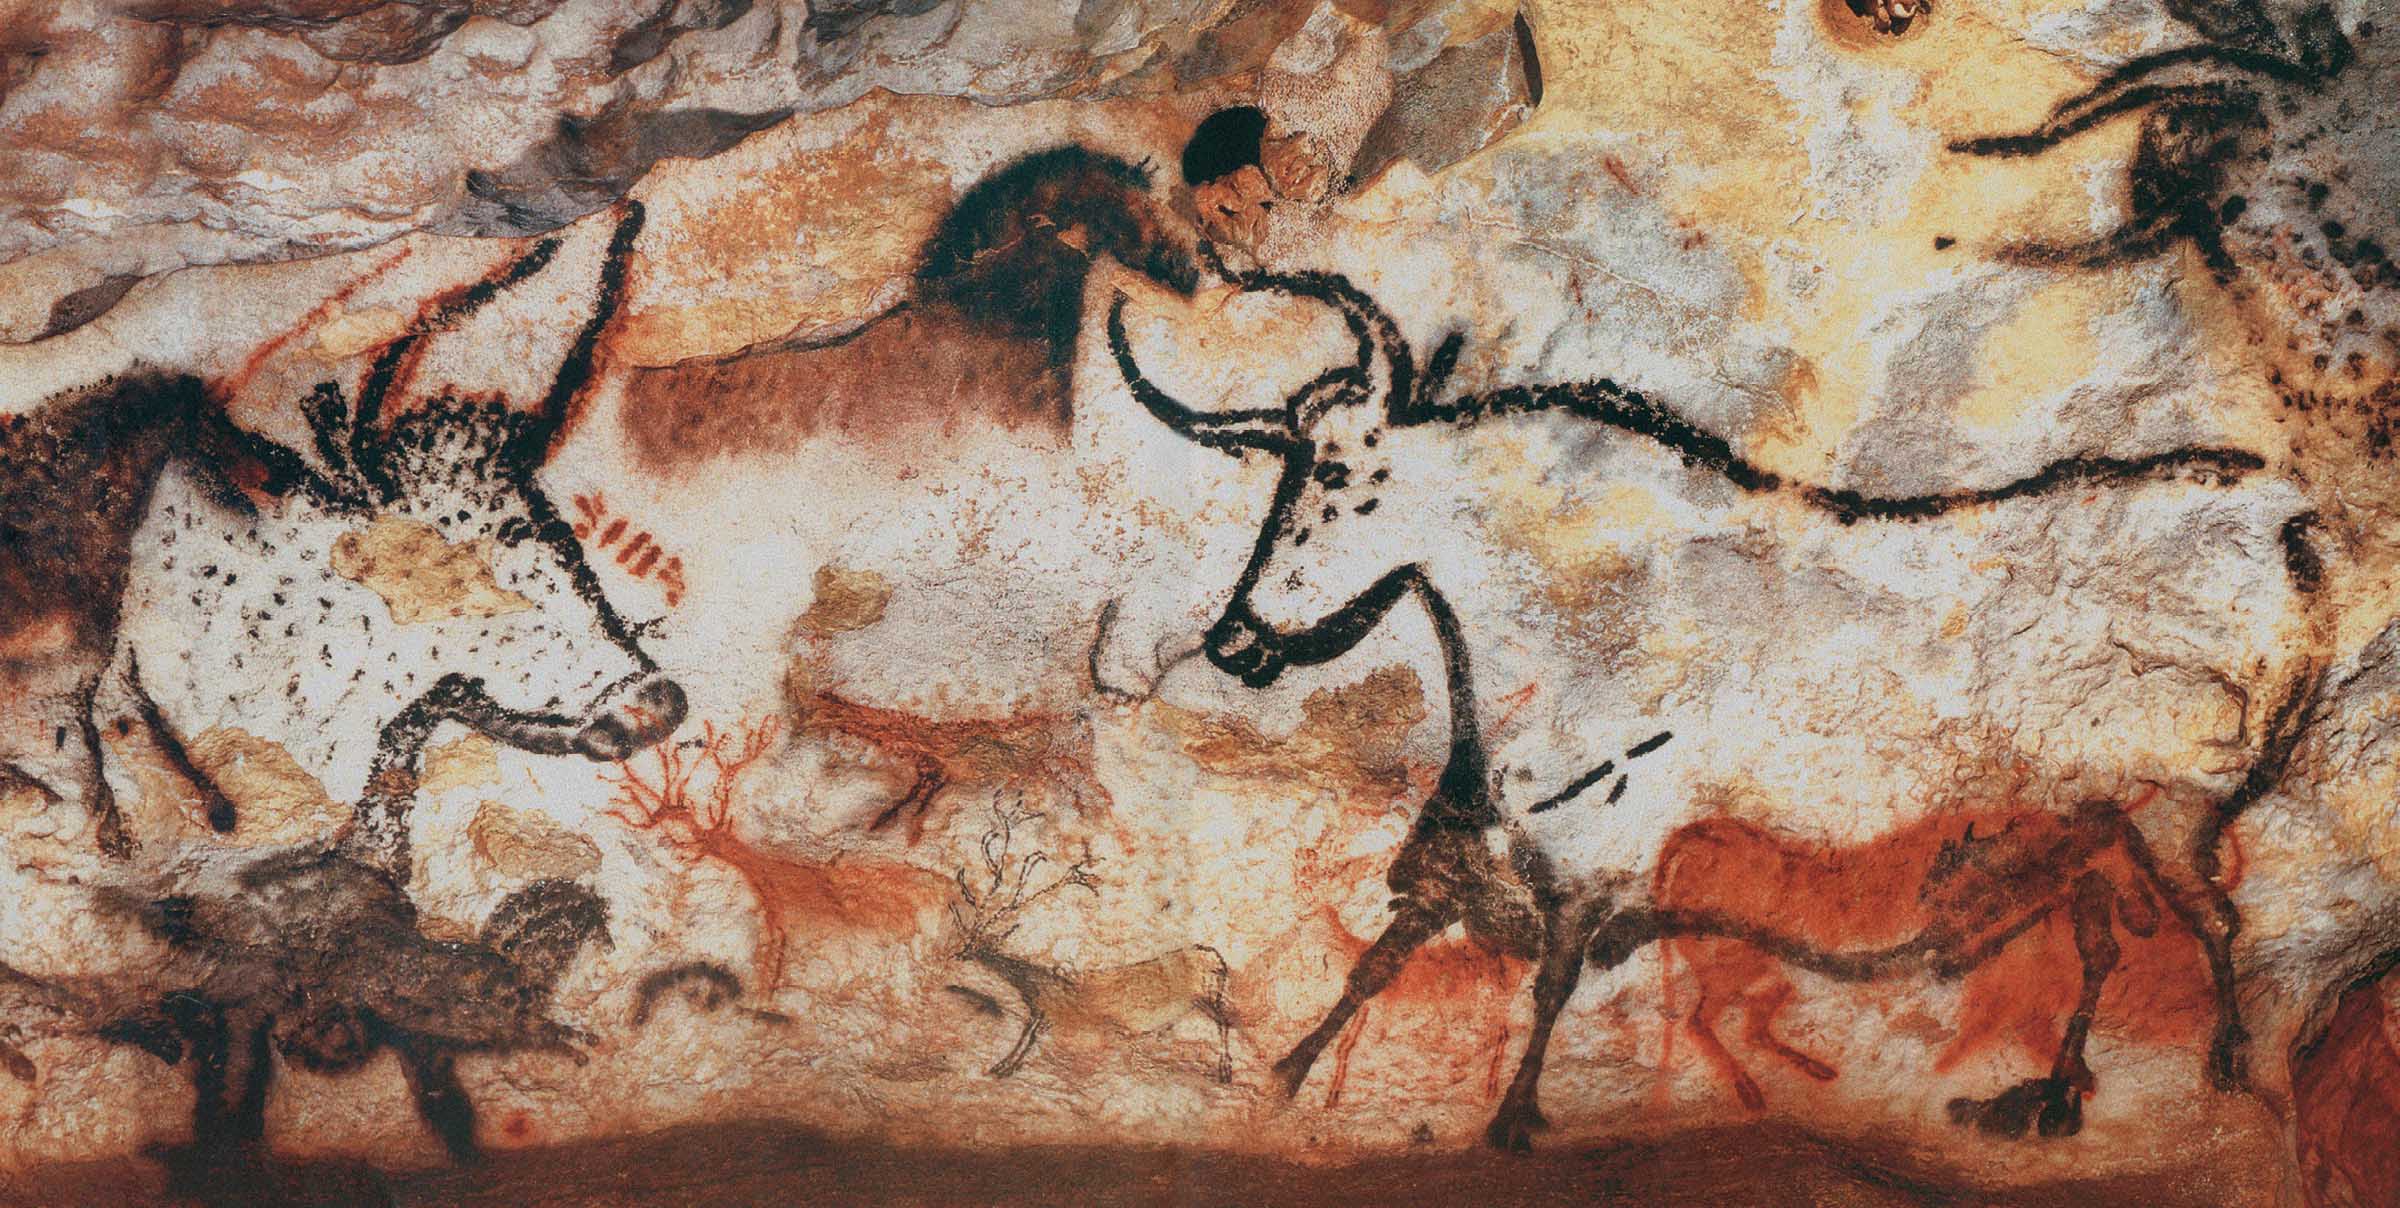 Le pitture rupestri di Lascaux